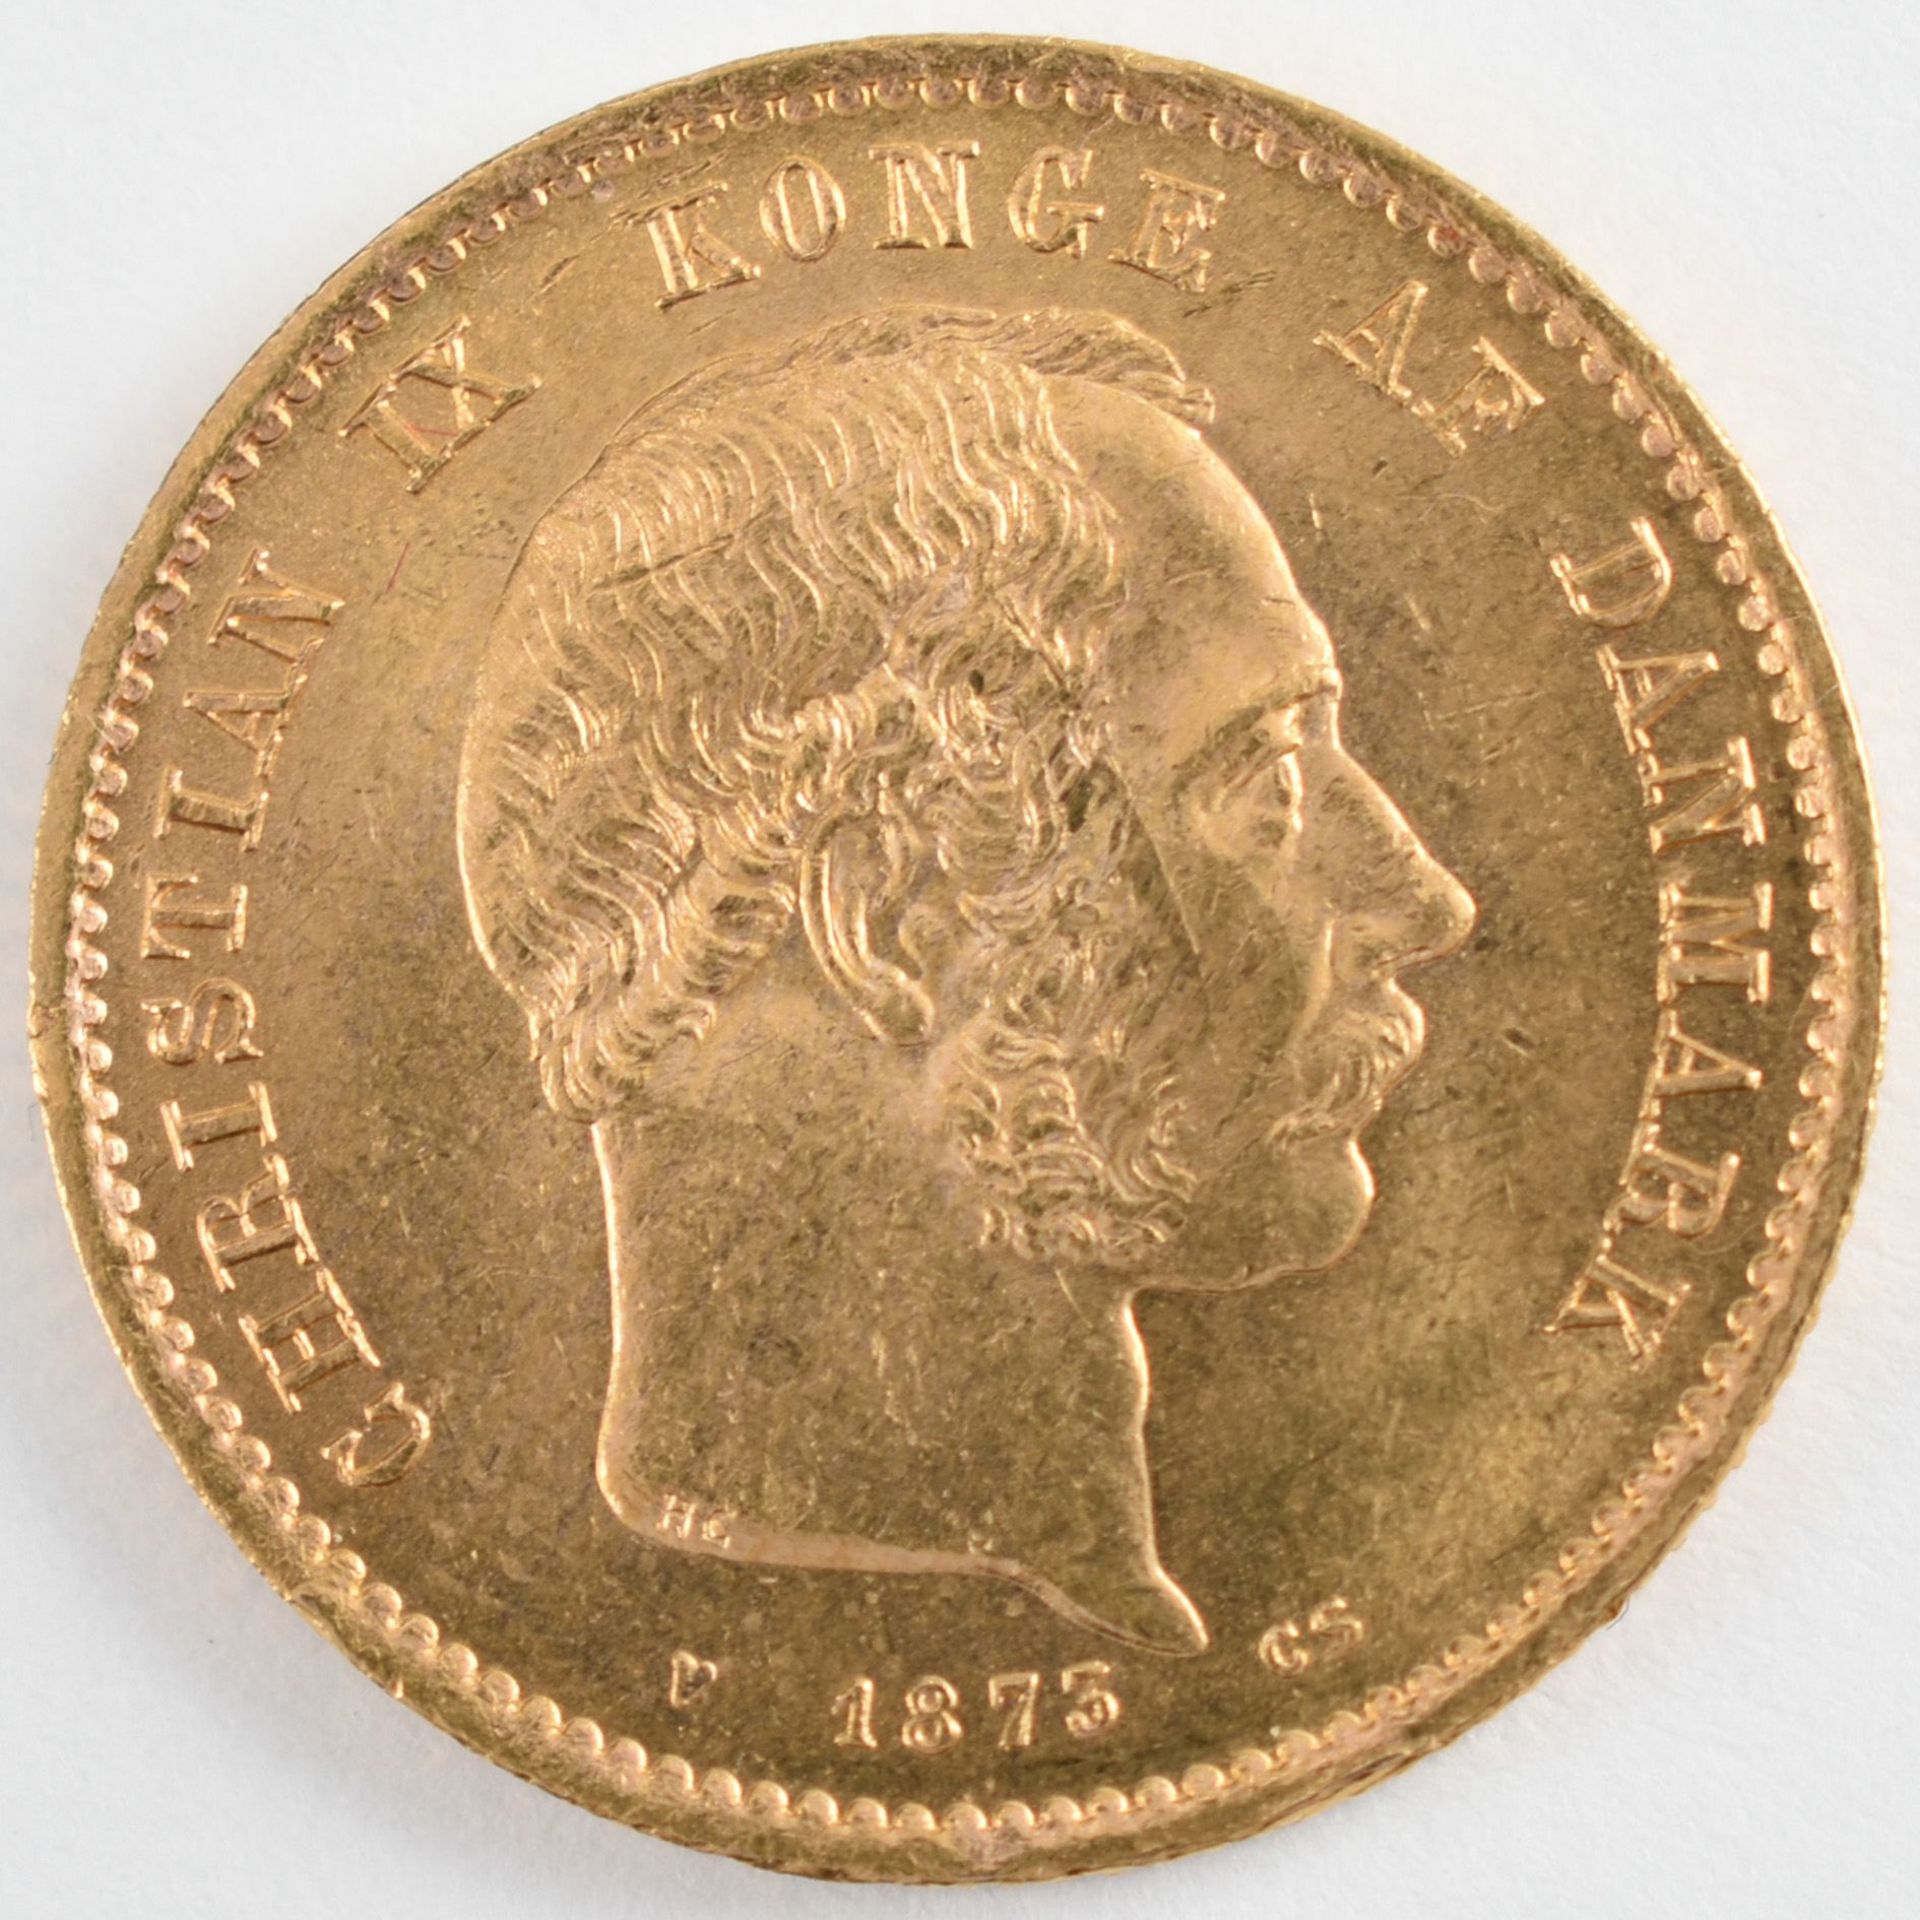 Goldmünze Dänemark 1873 20 Kroner in Gold, 900/1000, 8,96 g, av. Christian IX. König von Dänemark, - Bild 3 aus 3